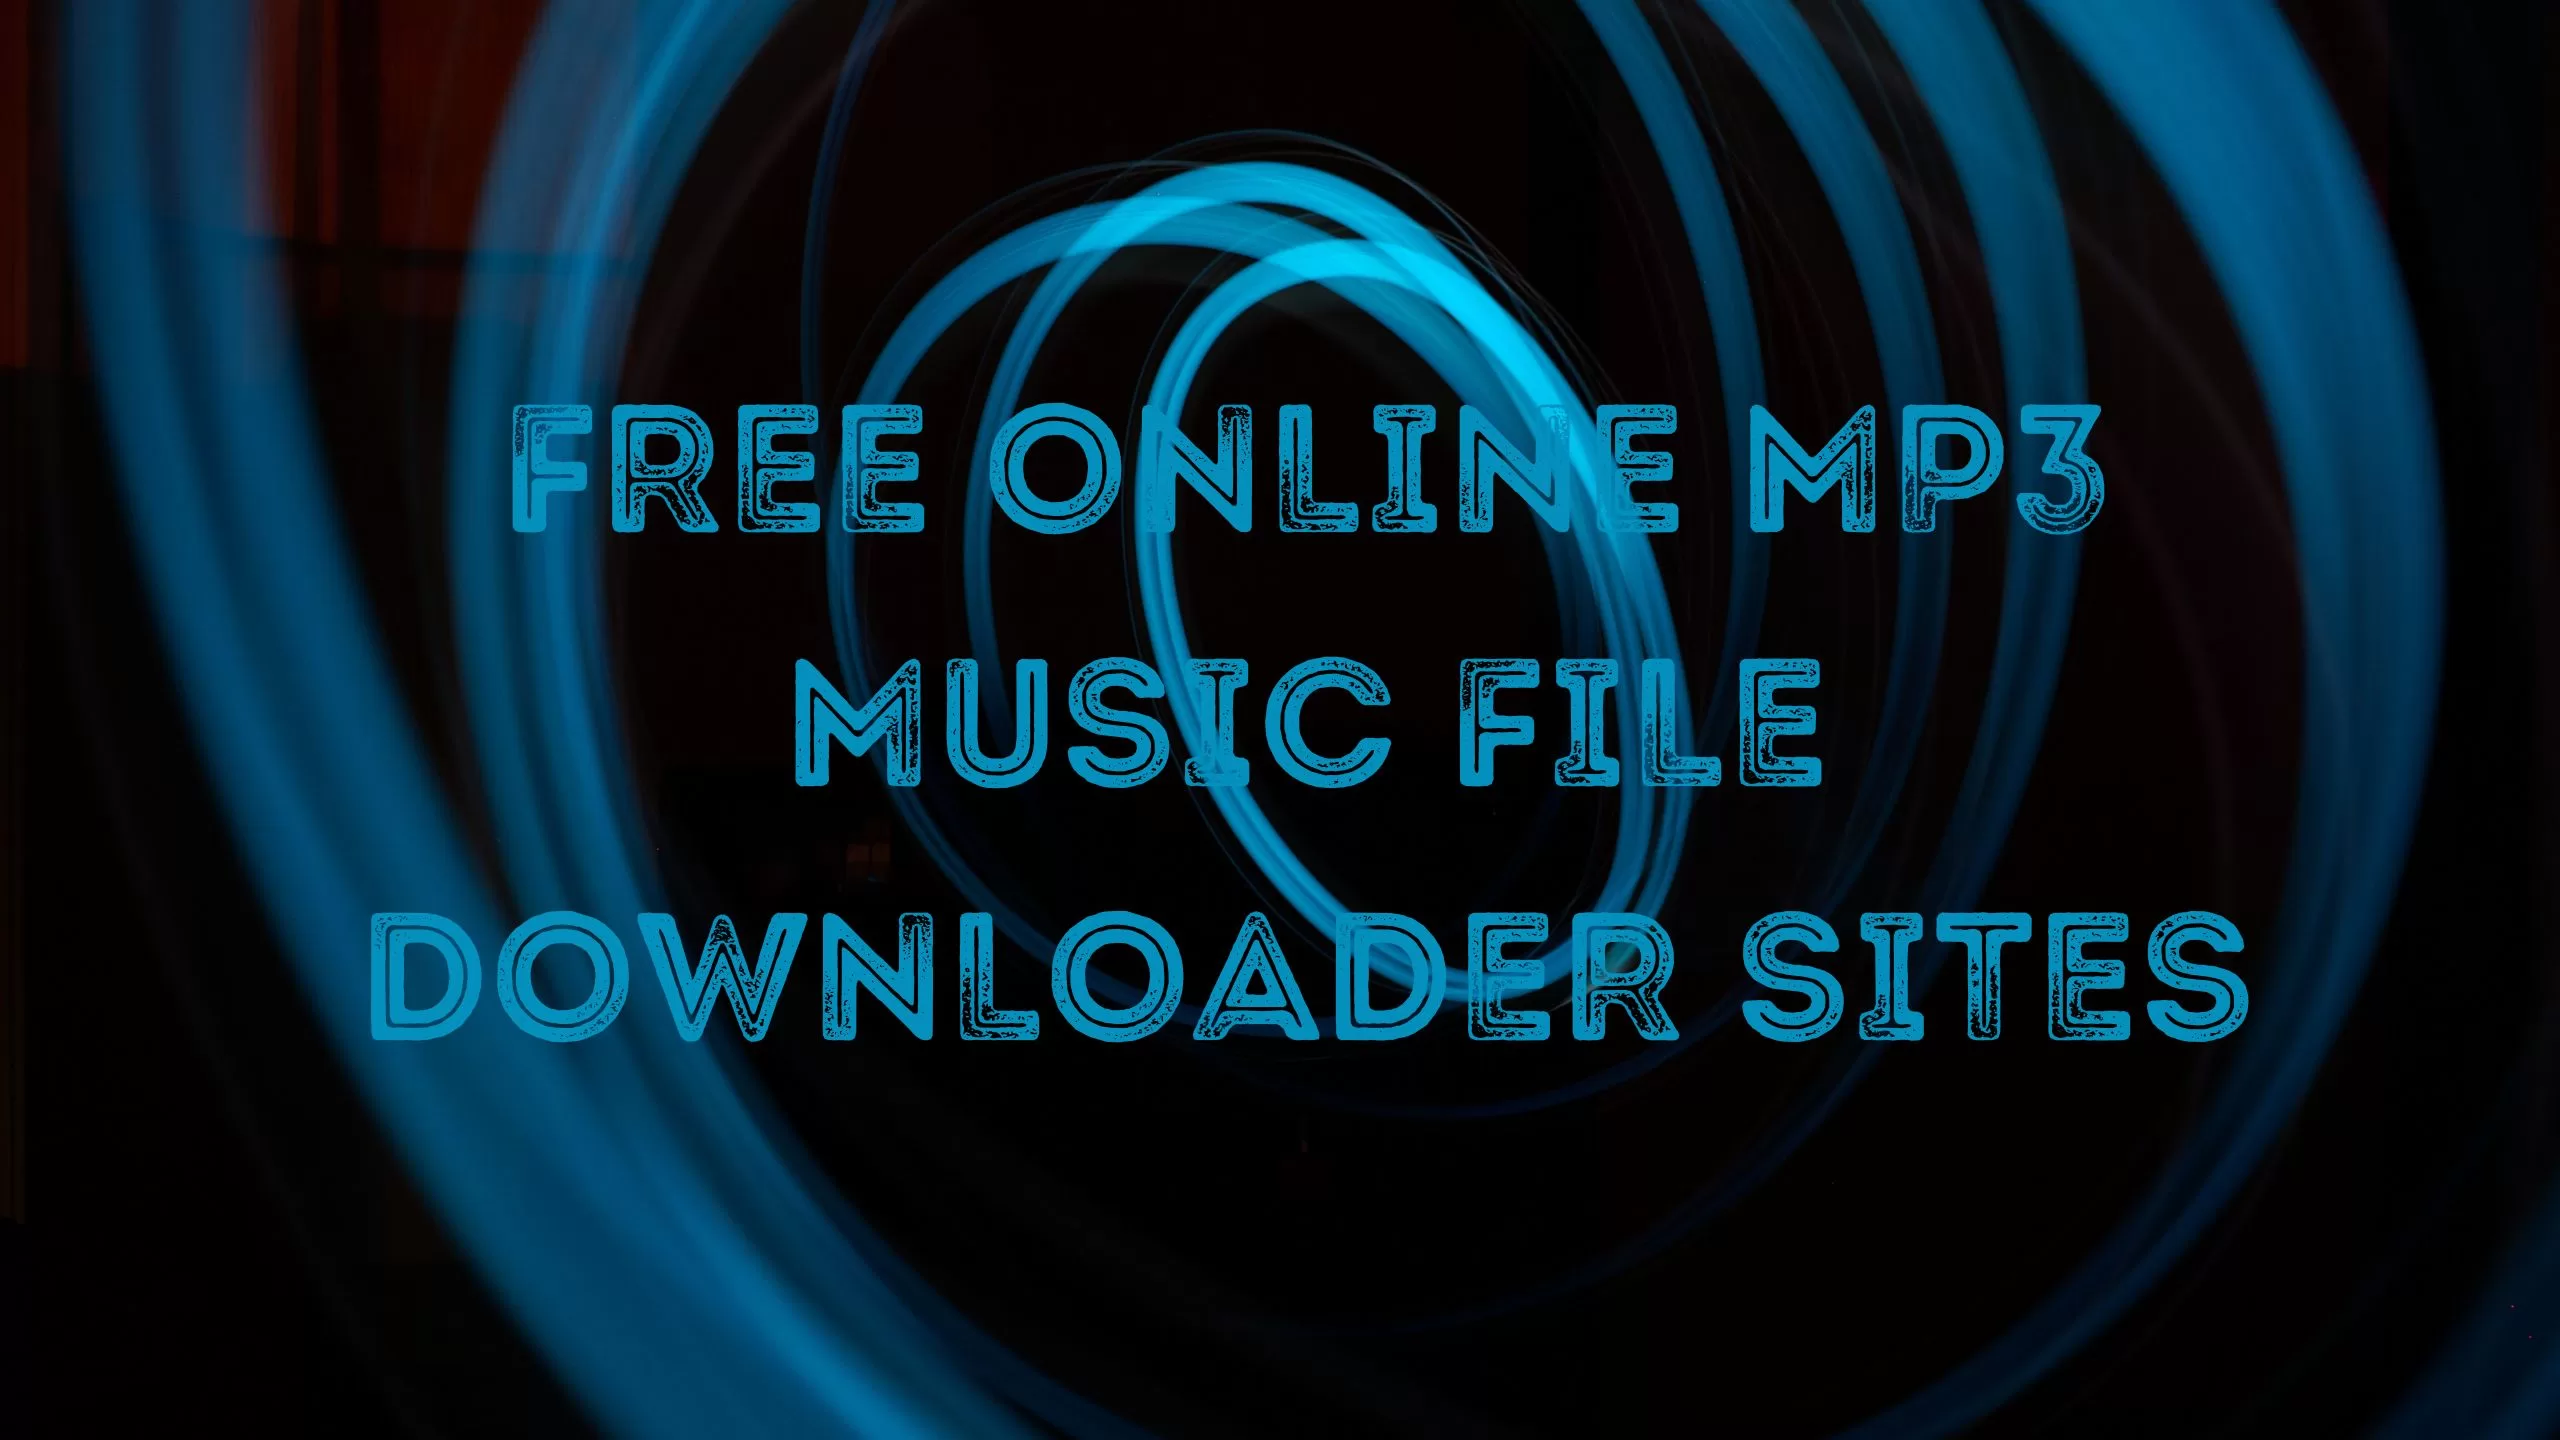 Free online mp3 music | edtechreader